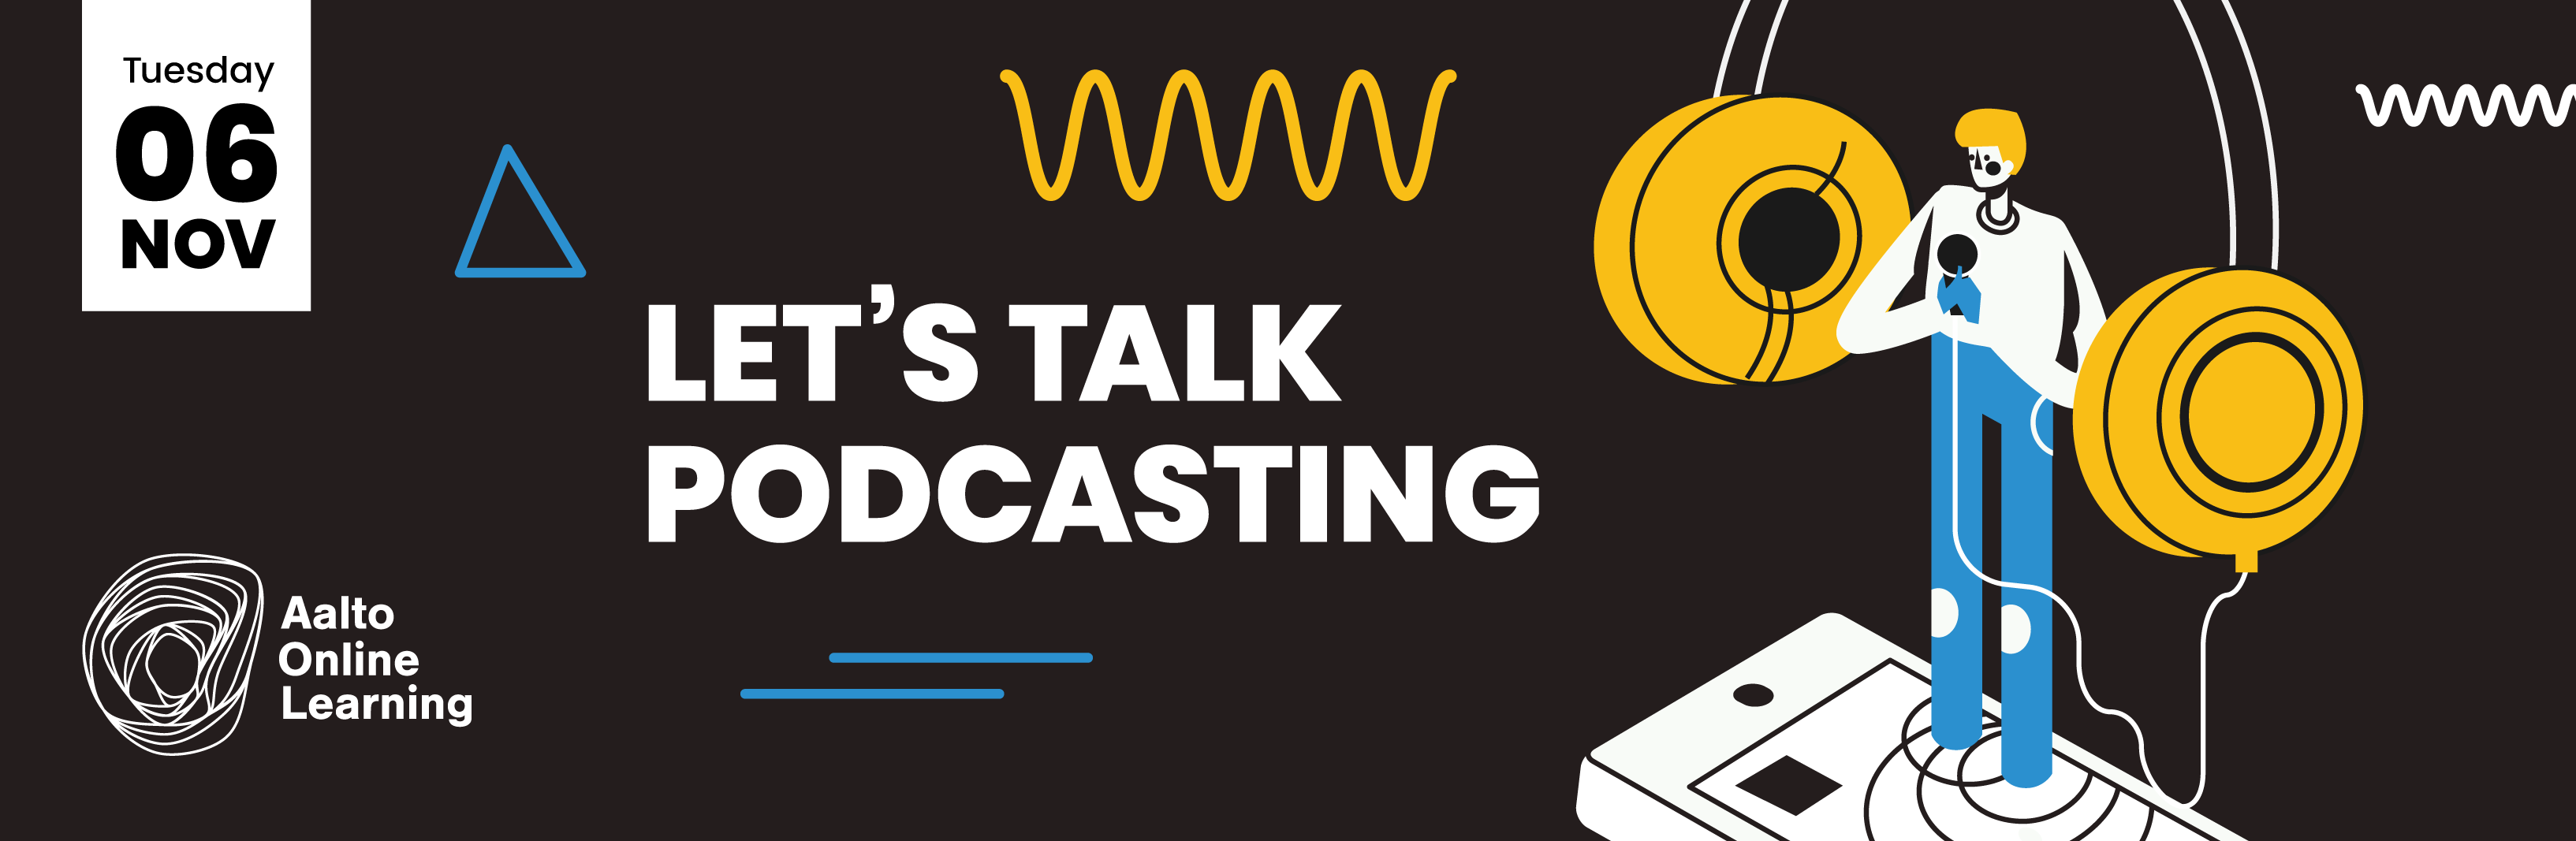 Let’s talk Podcasting